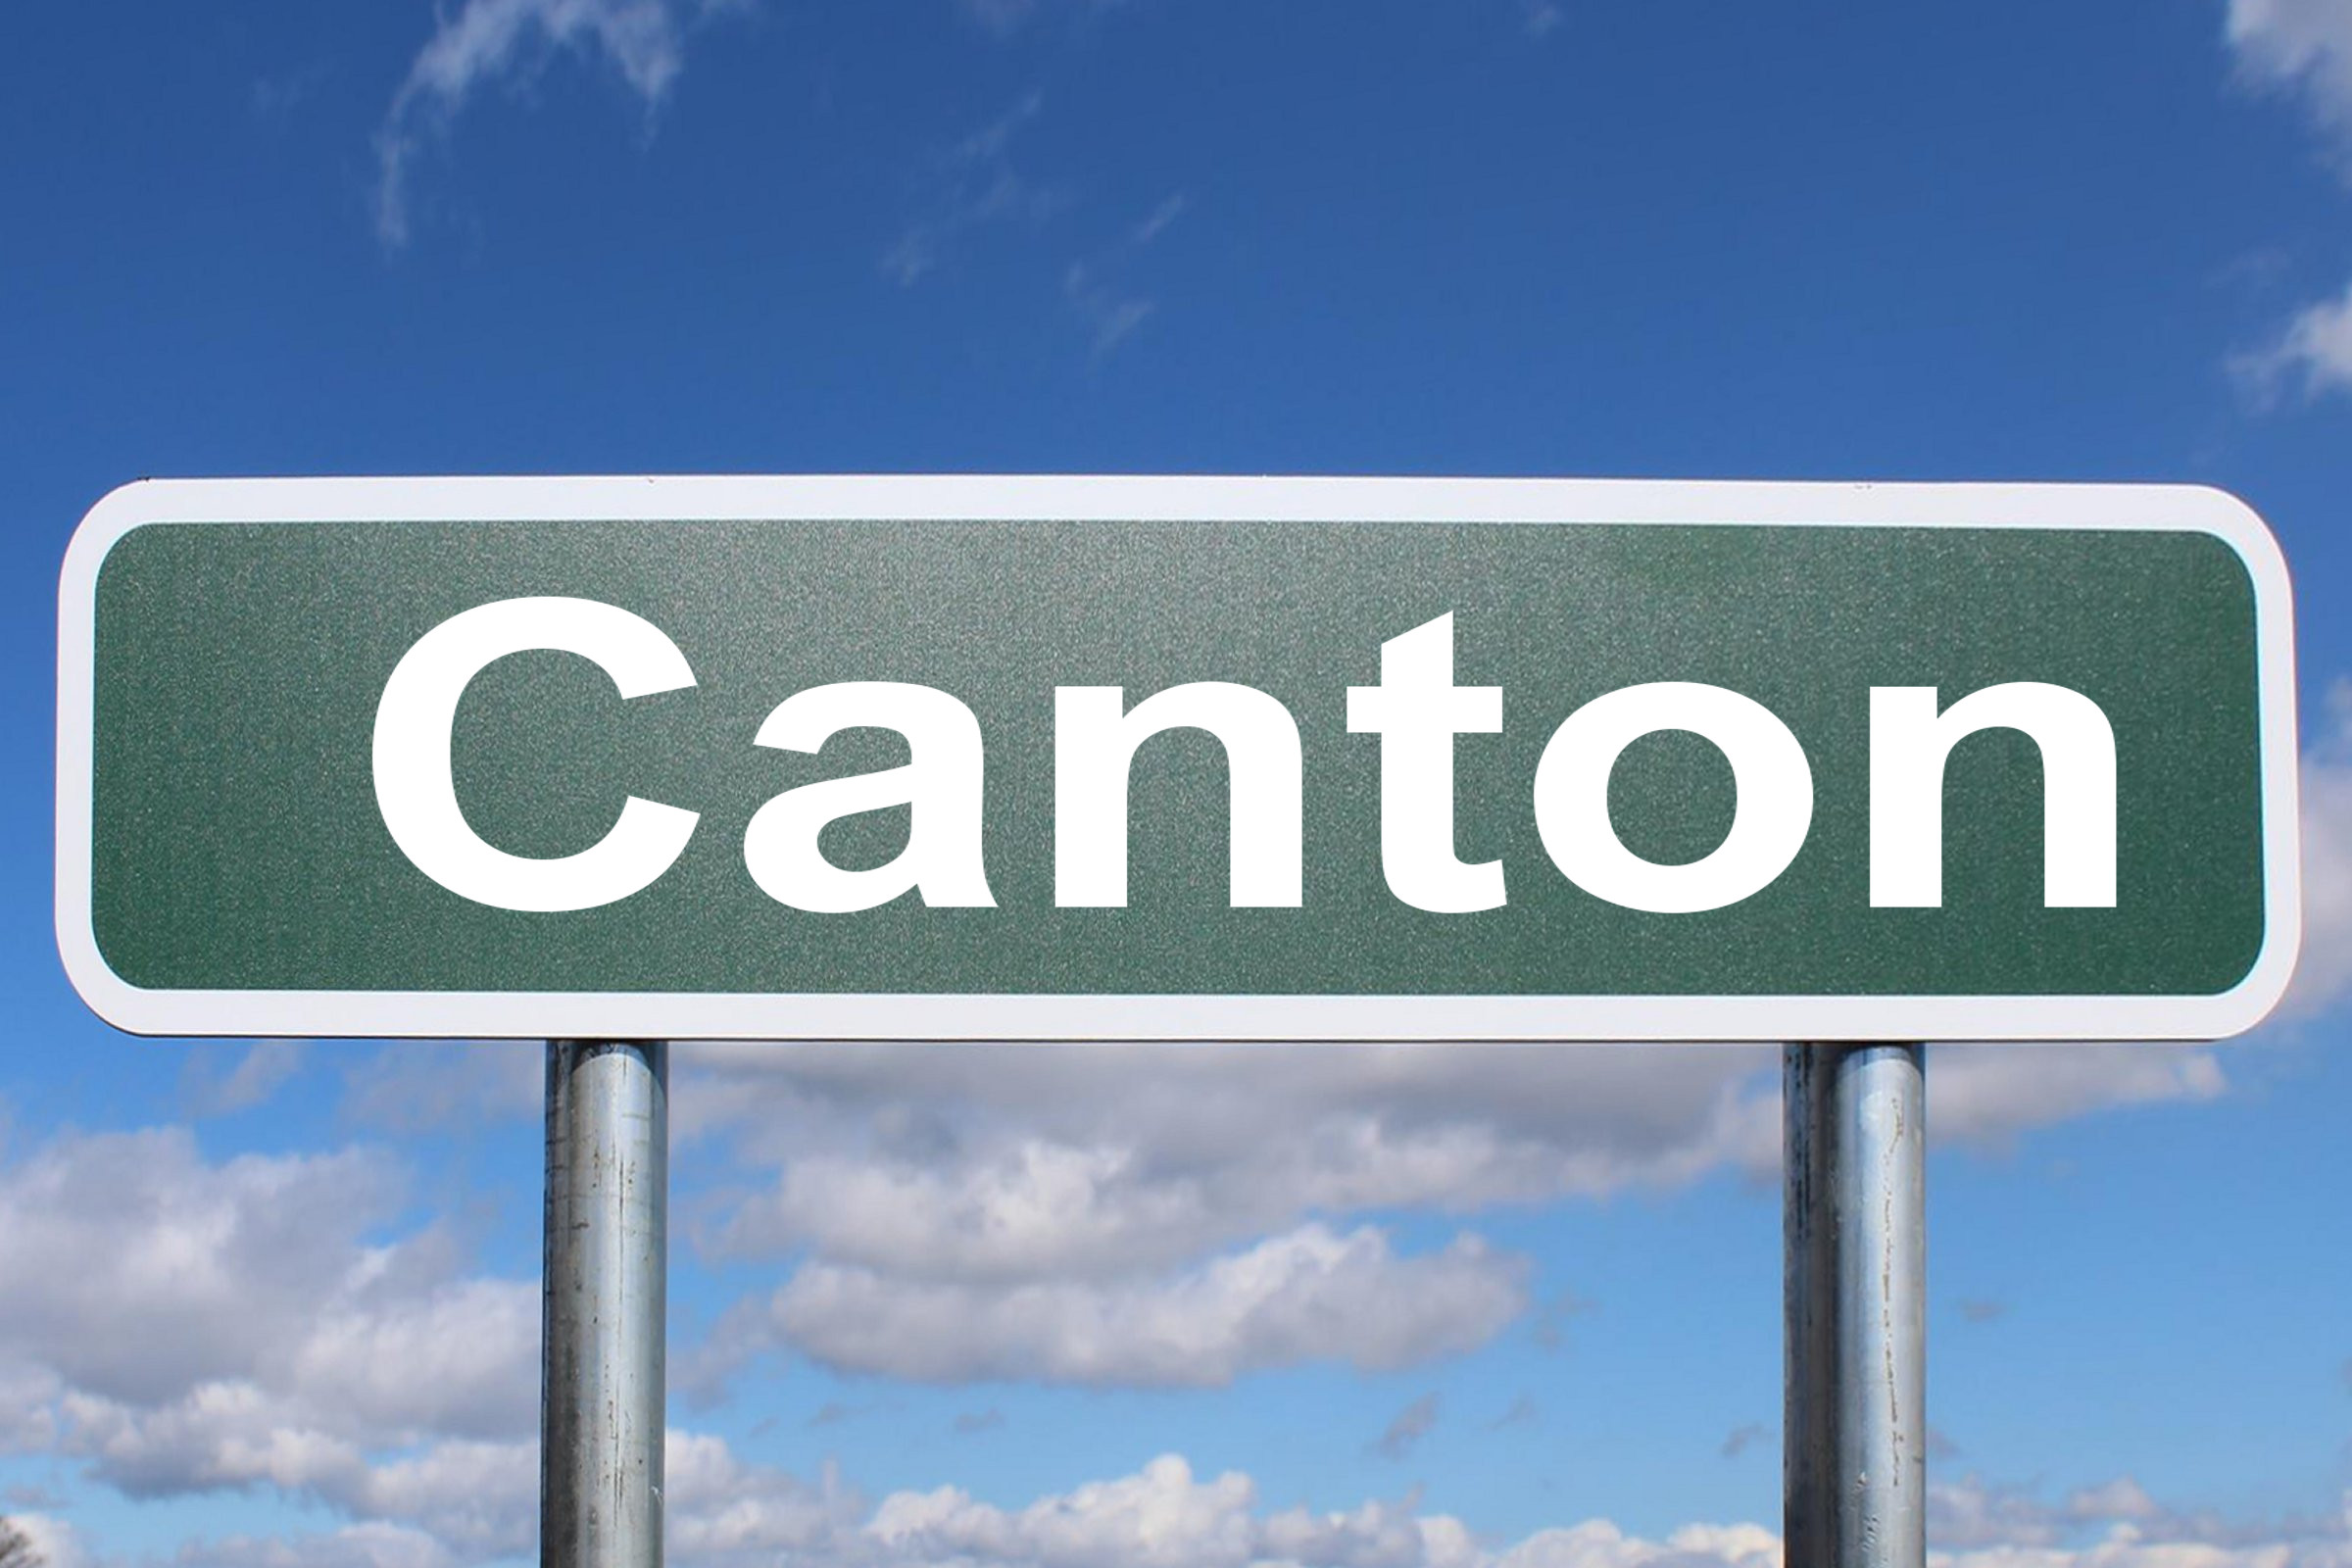 canton